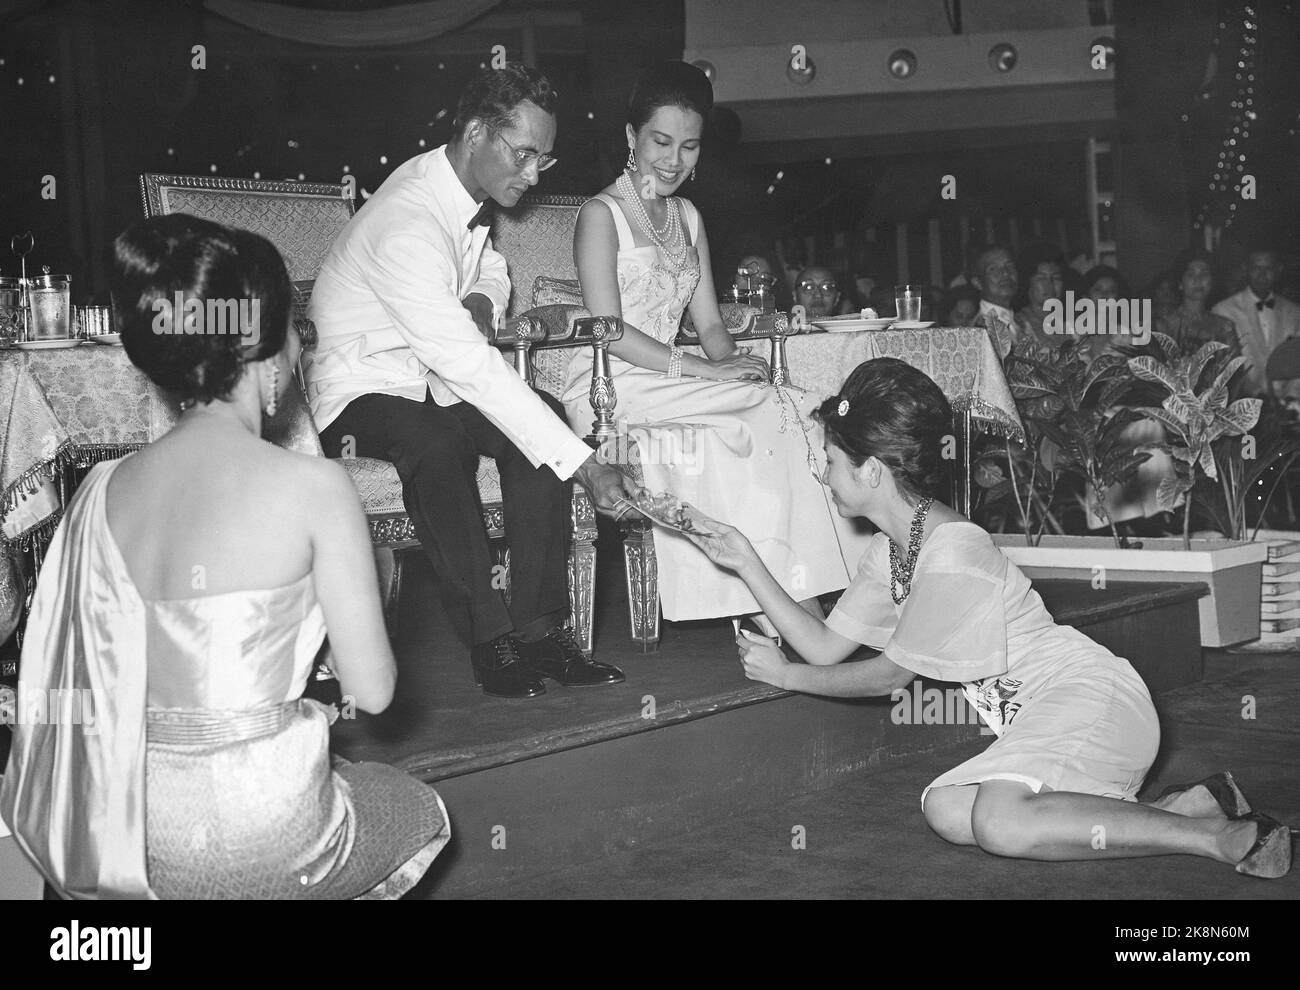 Bangkok 5 juin 1965, Thaïlande. Depuis 5 ans, la compagnie aérienne SAS a construit Thai Airways International Ltd (Thai International) en Thaïlande, pour la joie et le bénéfice mutuels. La société compte trois caravanes et environ 700 employés, dont 37 Scandinaves. Ici, de la fête de 5 ans à laquelle le couple royal thaïlandais a participé, ils distribuent une victoire ici, un billet touristique reçu par le gagnant d'une manière soumise. C'est le roi Phumiphol Adalyadeij qui donne le billet, la reine Sirikit regarde avec un joli sourire. Photo: Sverre A. Børretzen / actuel / NTB Banque D'Images